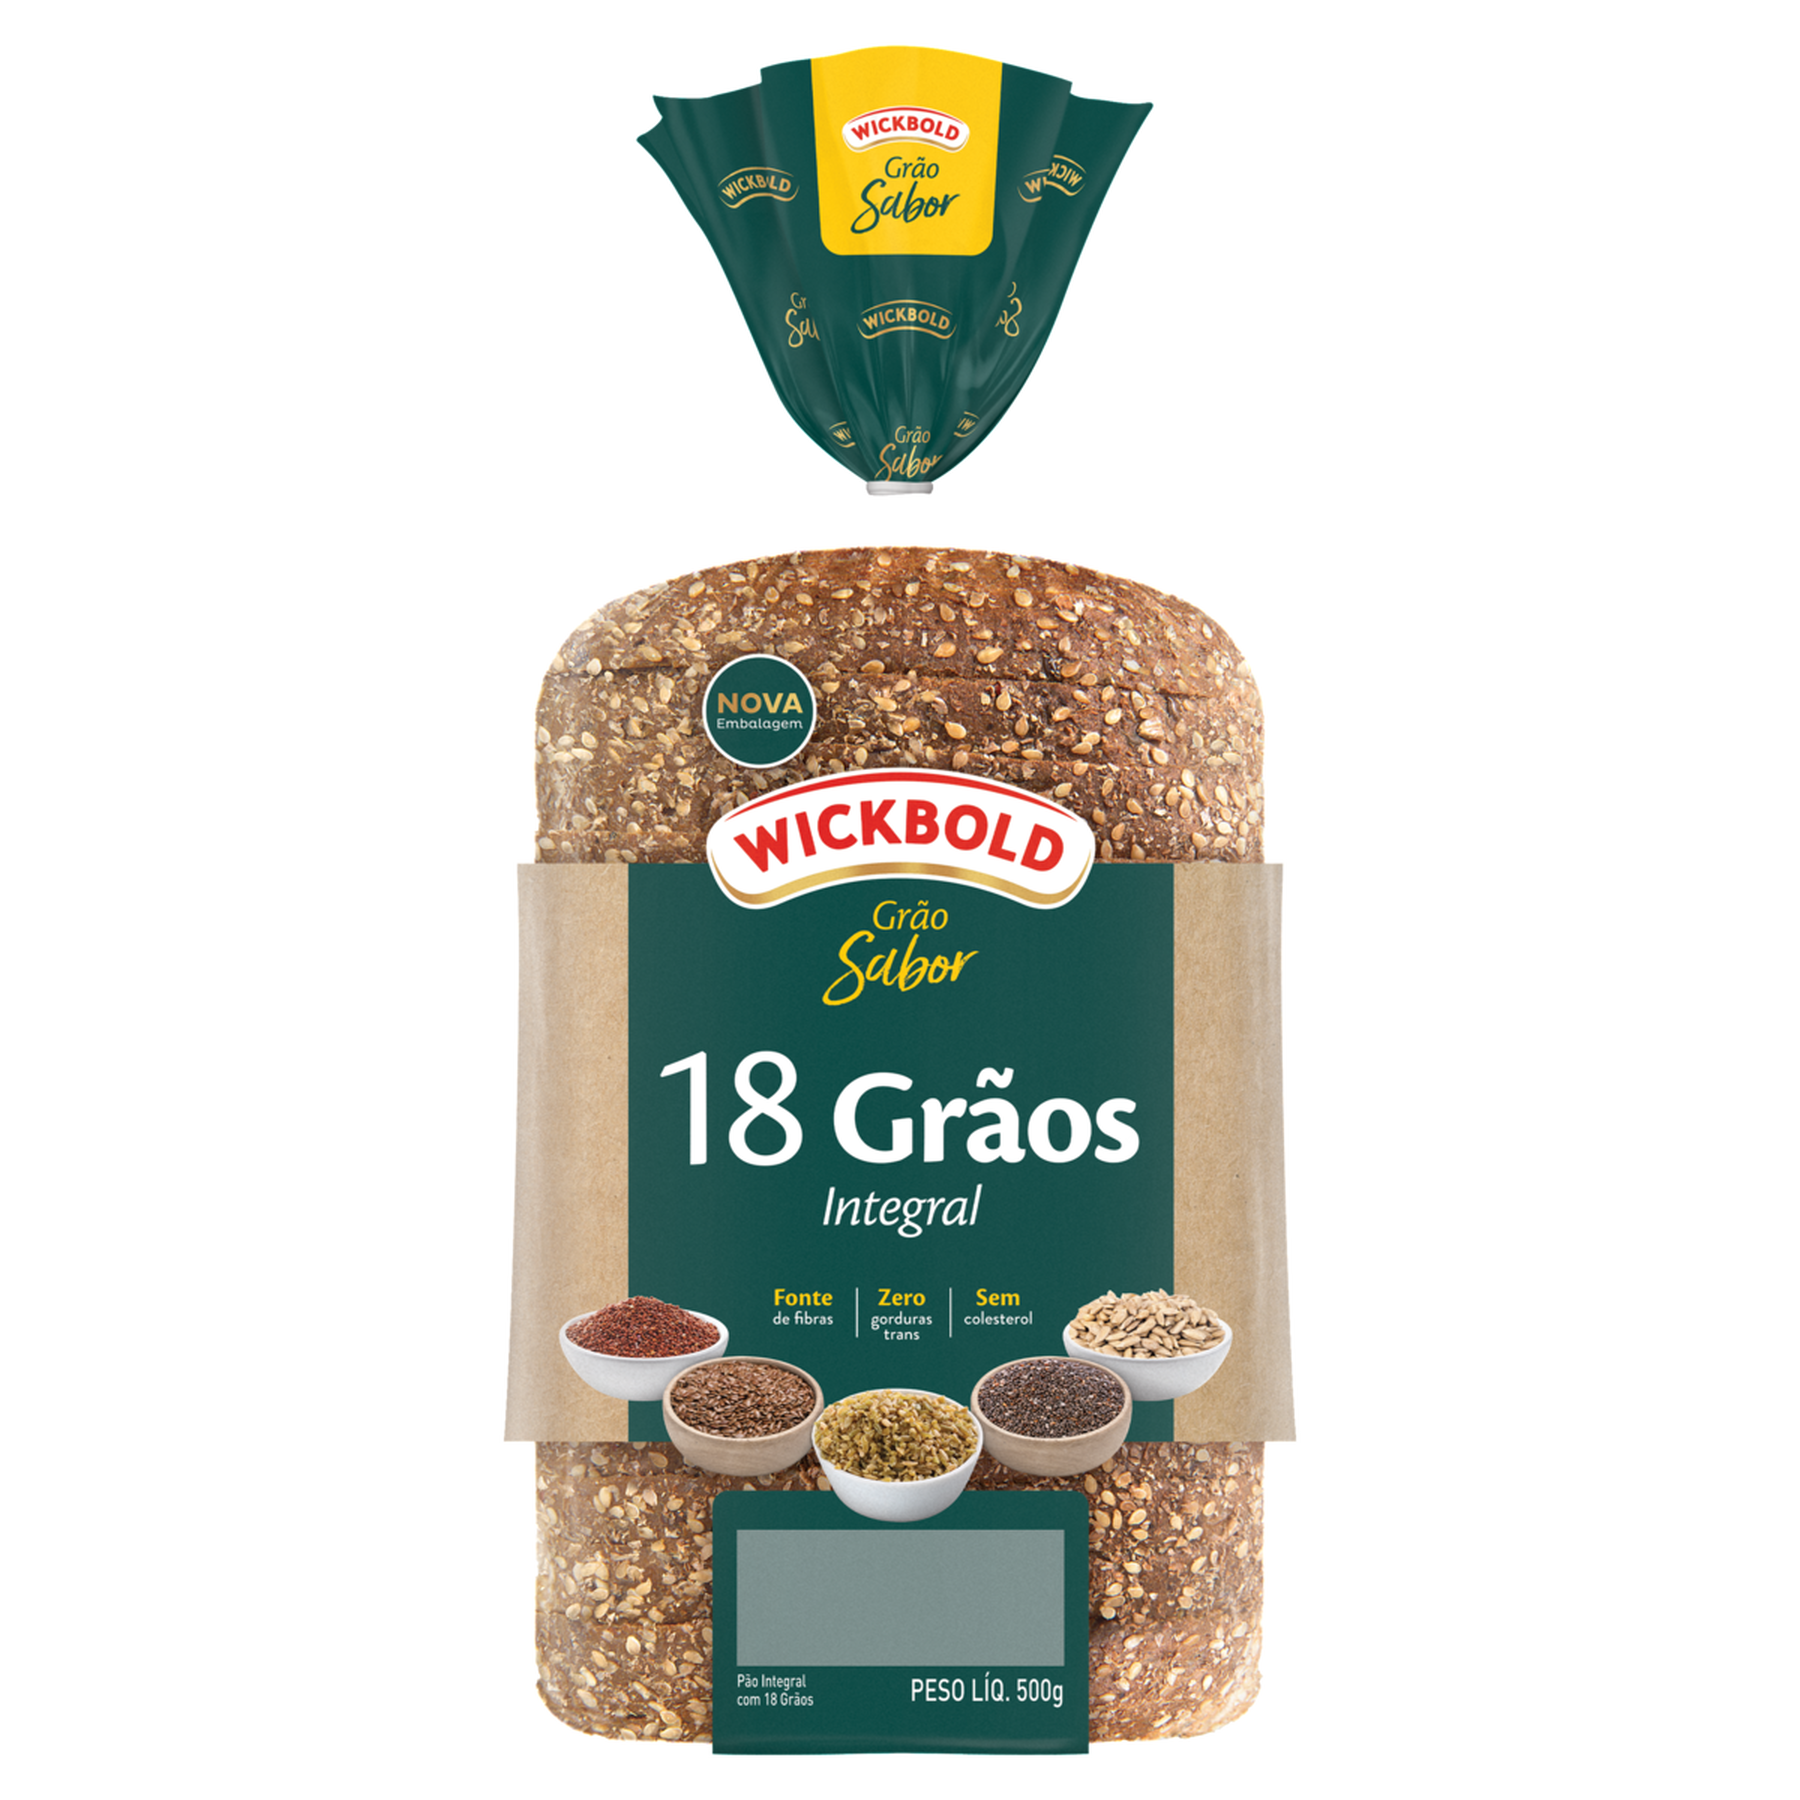 Pão de Forma 45,2% Integral 18 Grãos Wickbold Grão Sabor Pacote 500g